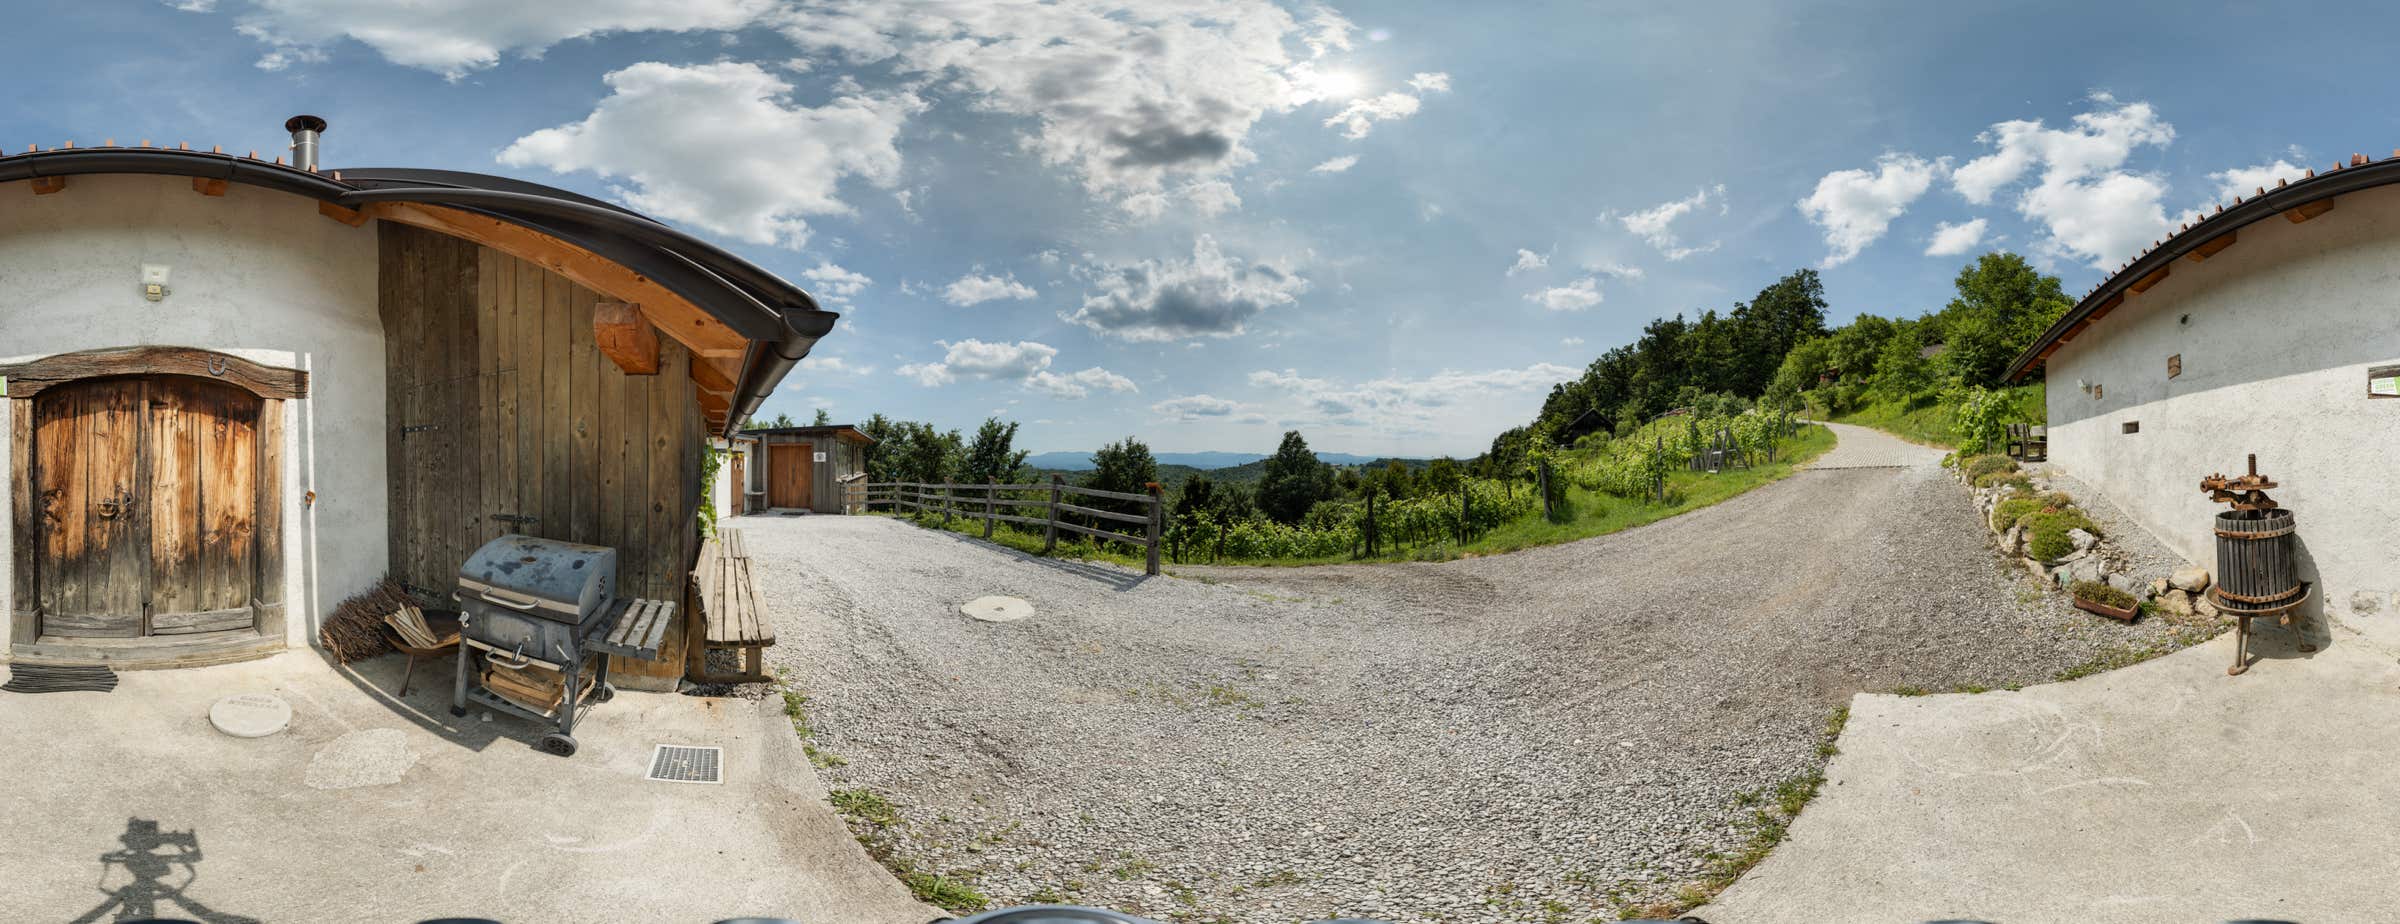 Immagine panoramica all'esterno di Škatlar con l'ingresso e la vista sul vigneto proprio accanto all'edificio.